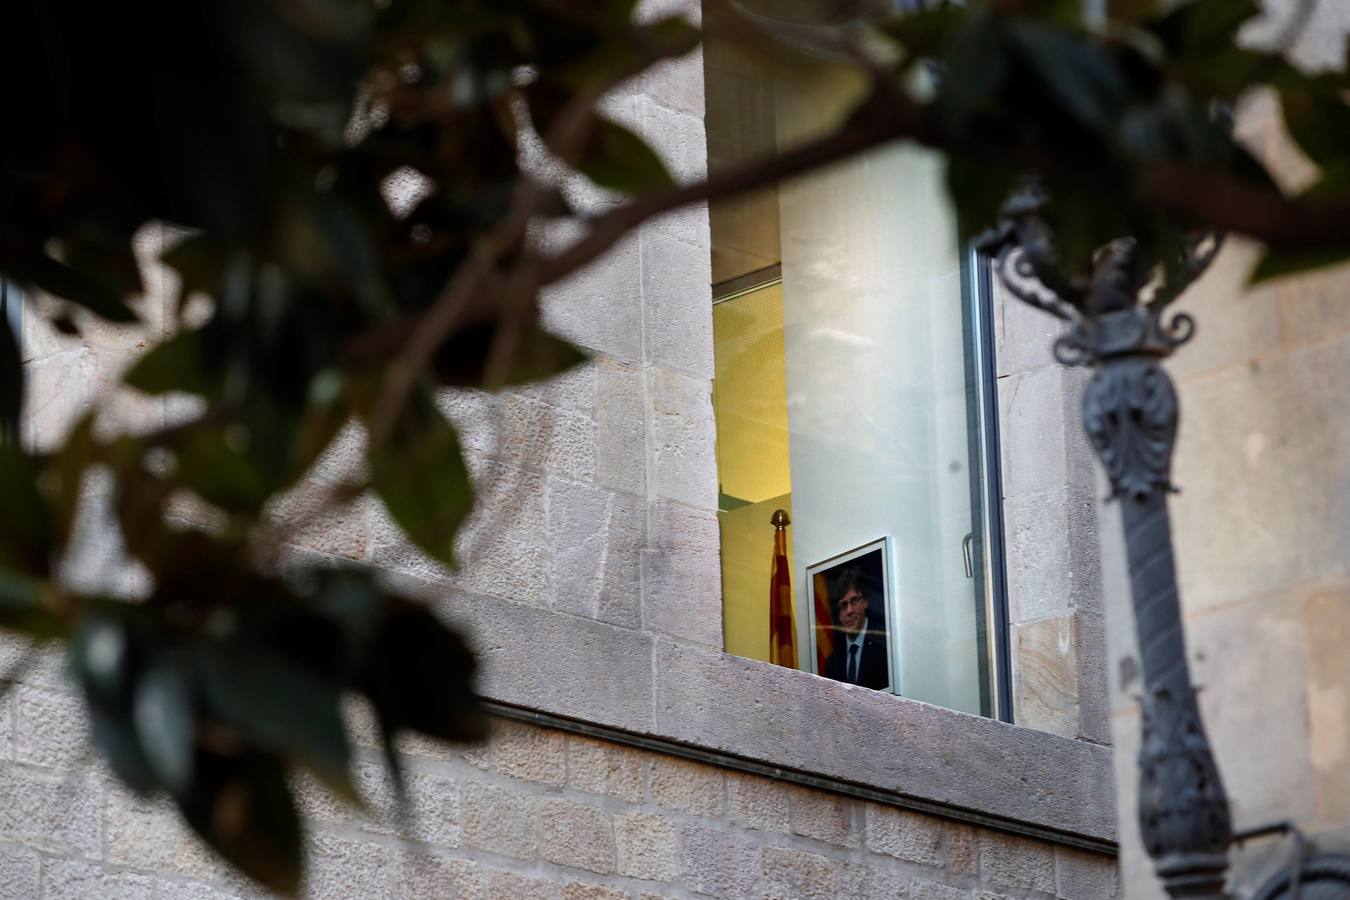 30 de octubre. Vacío en la Generalitat. Una imagen de Carles Puigdemont, cesado por el Gobierno como presidente catalán, colgada en uno de los despachos del Palau de la Generalitat, en el primer día laborable tras la puesta en marcha del artículo 155 de la Constitución para hacer frente al desafío secesionista en Cataluña. 